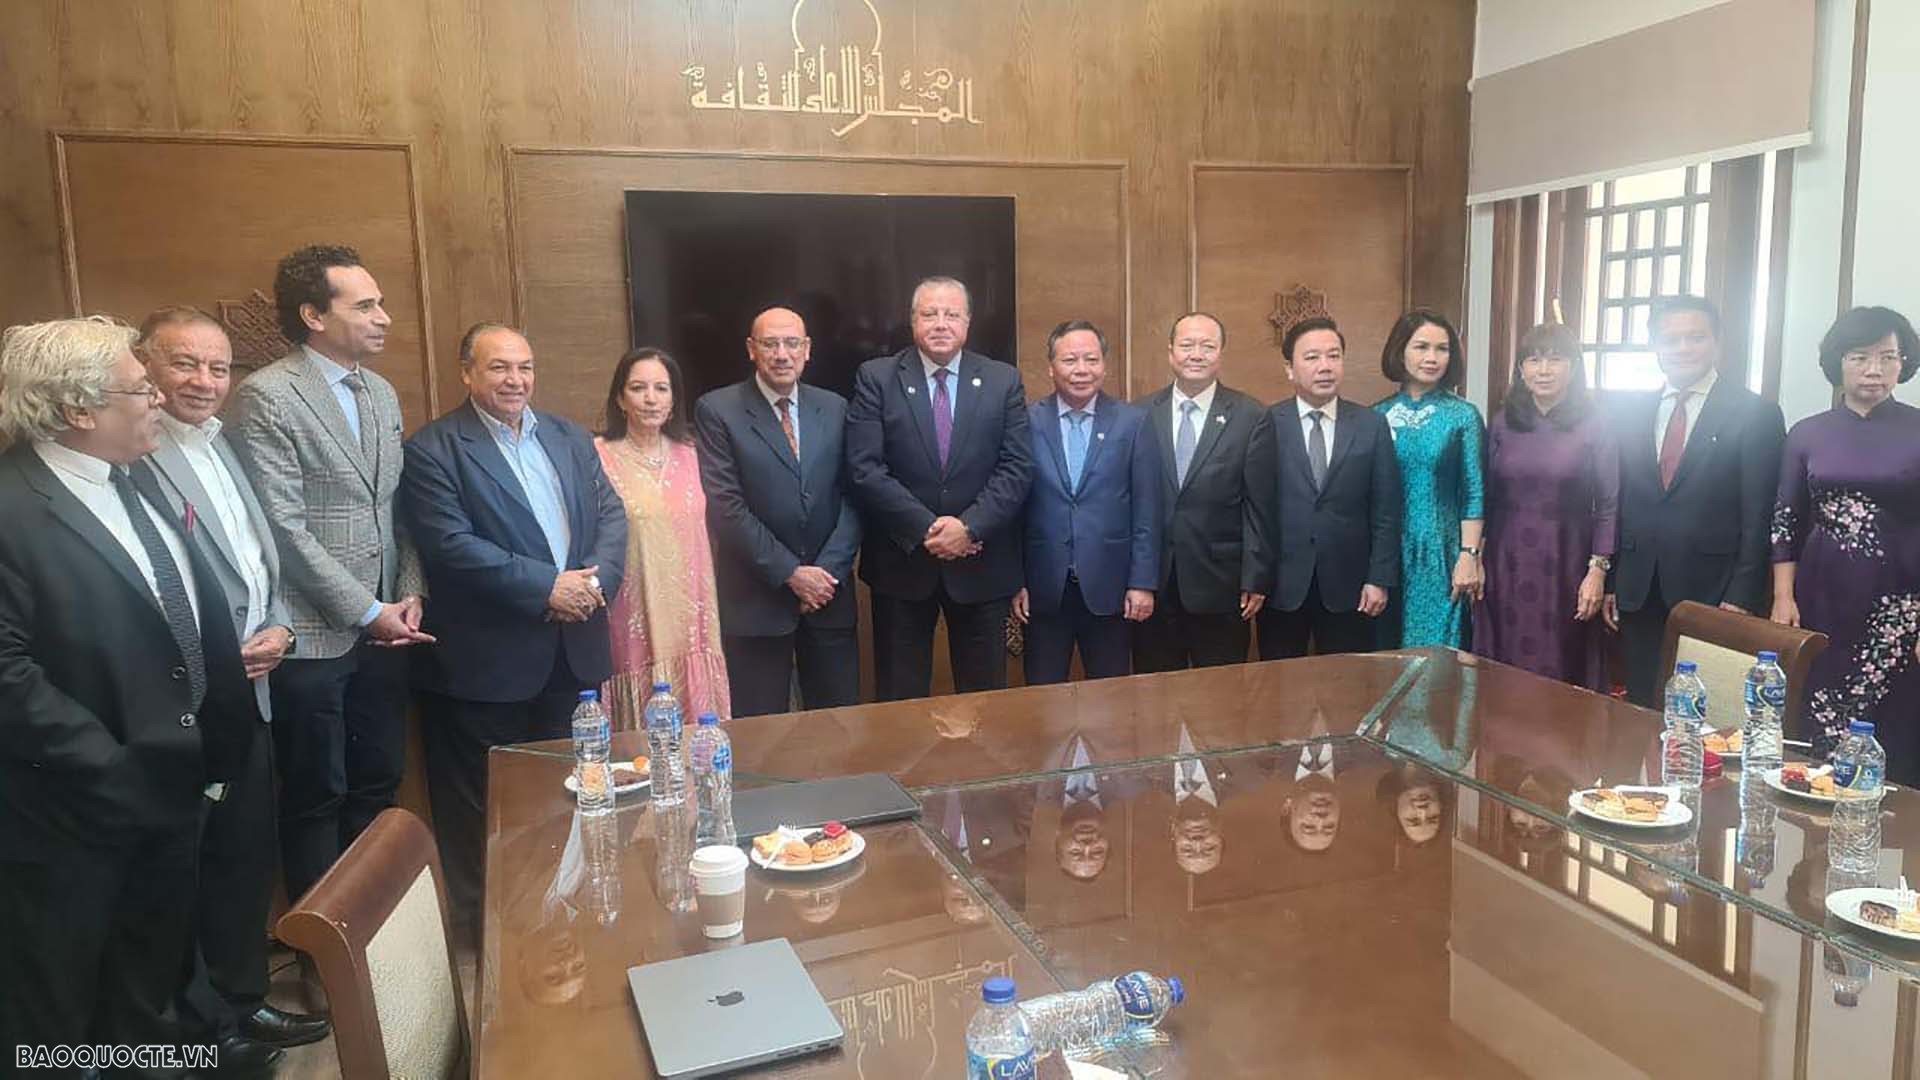 Đoàn đoàn đại biểu Thủ đô Hà Nội làm việc với Bộ Văn hoá Ai Cập.